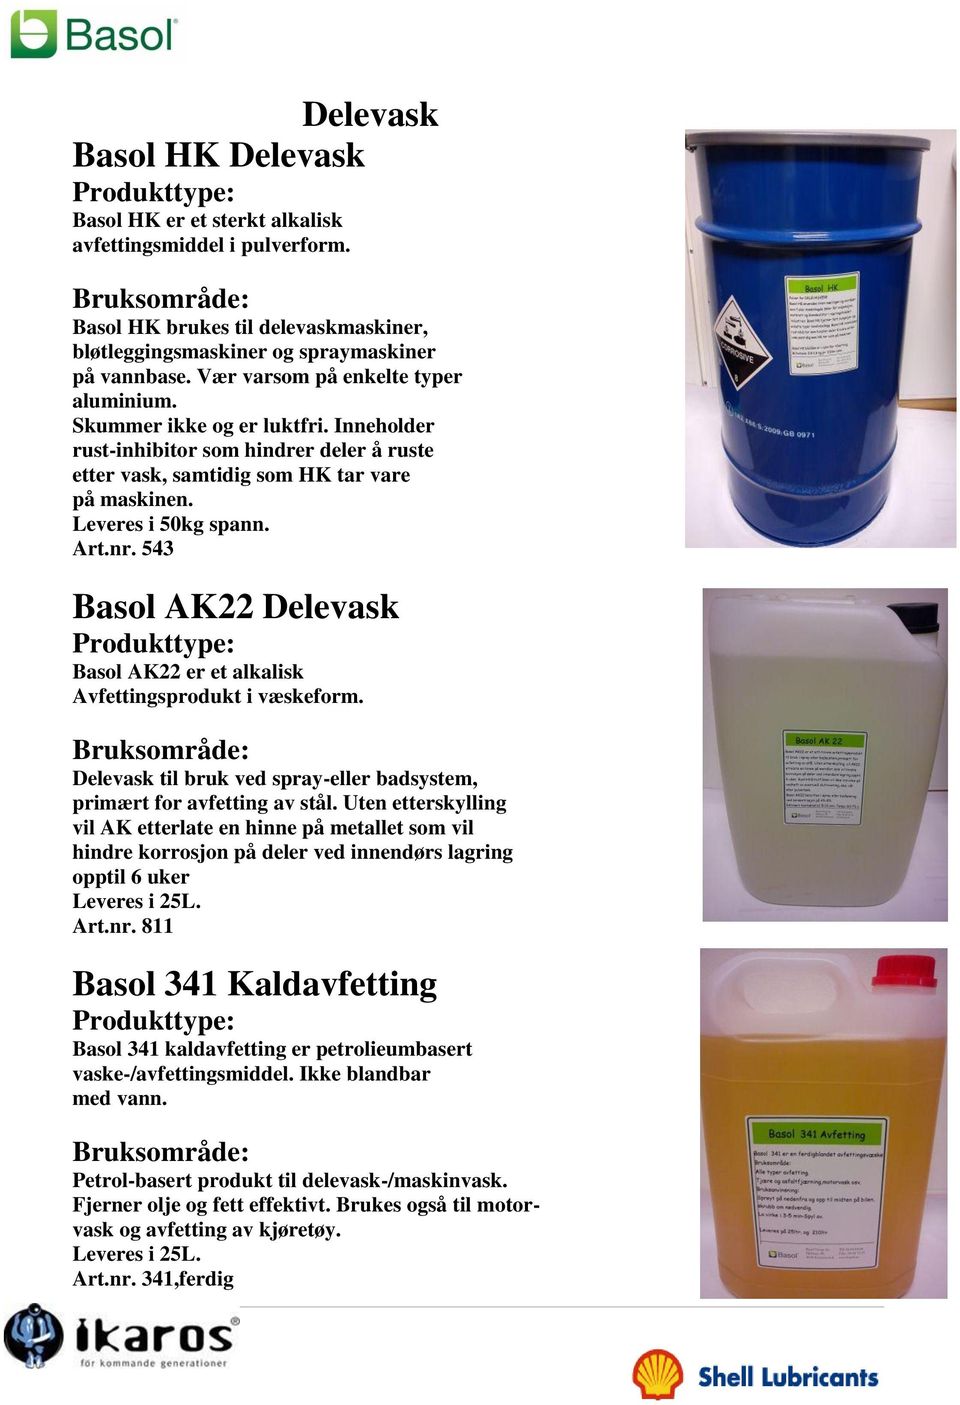 543 Basol AK22 Delevask Basol AK22 er et alkalisk Avfettingsprodukt i væskeform. Delevask til bruk ved spray-eller badsystem, primært for avfetting av stål.